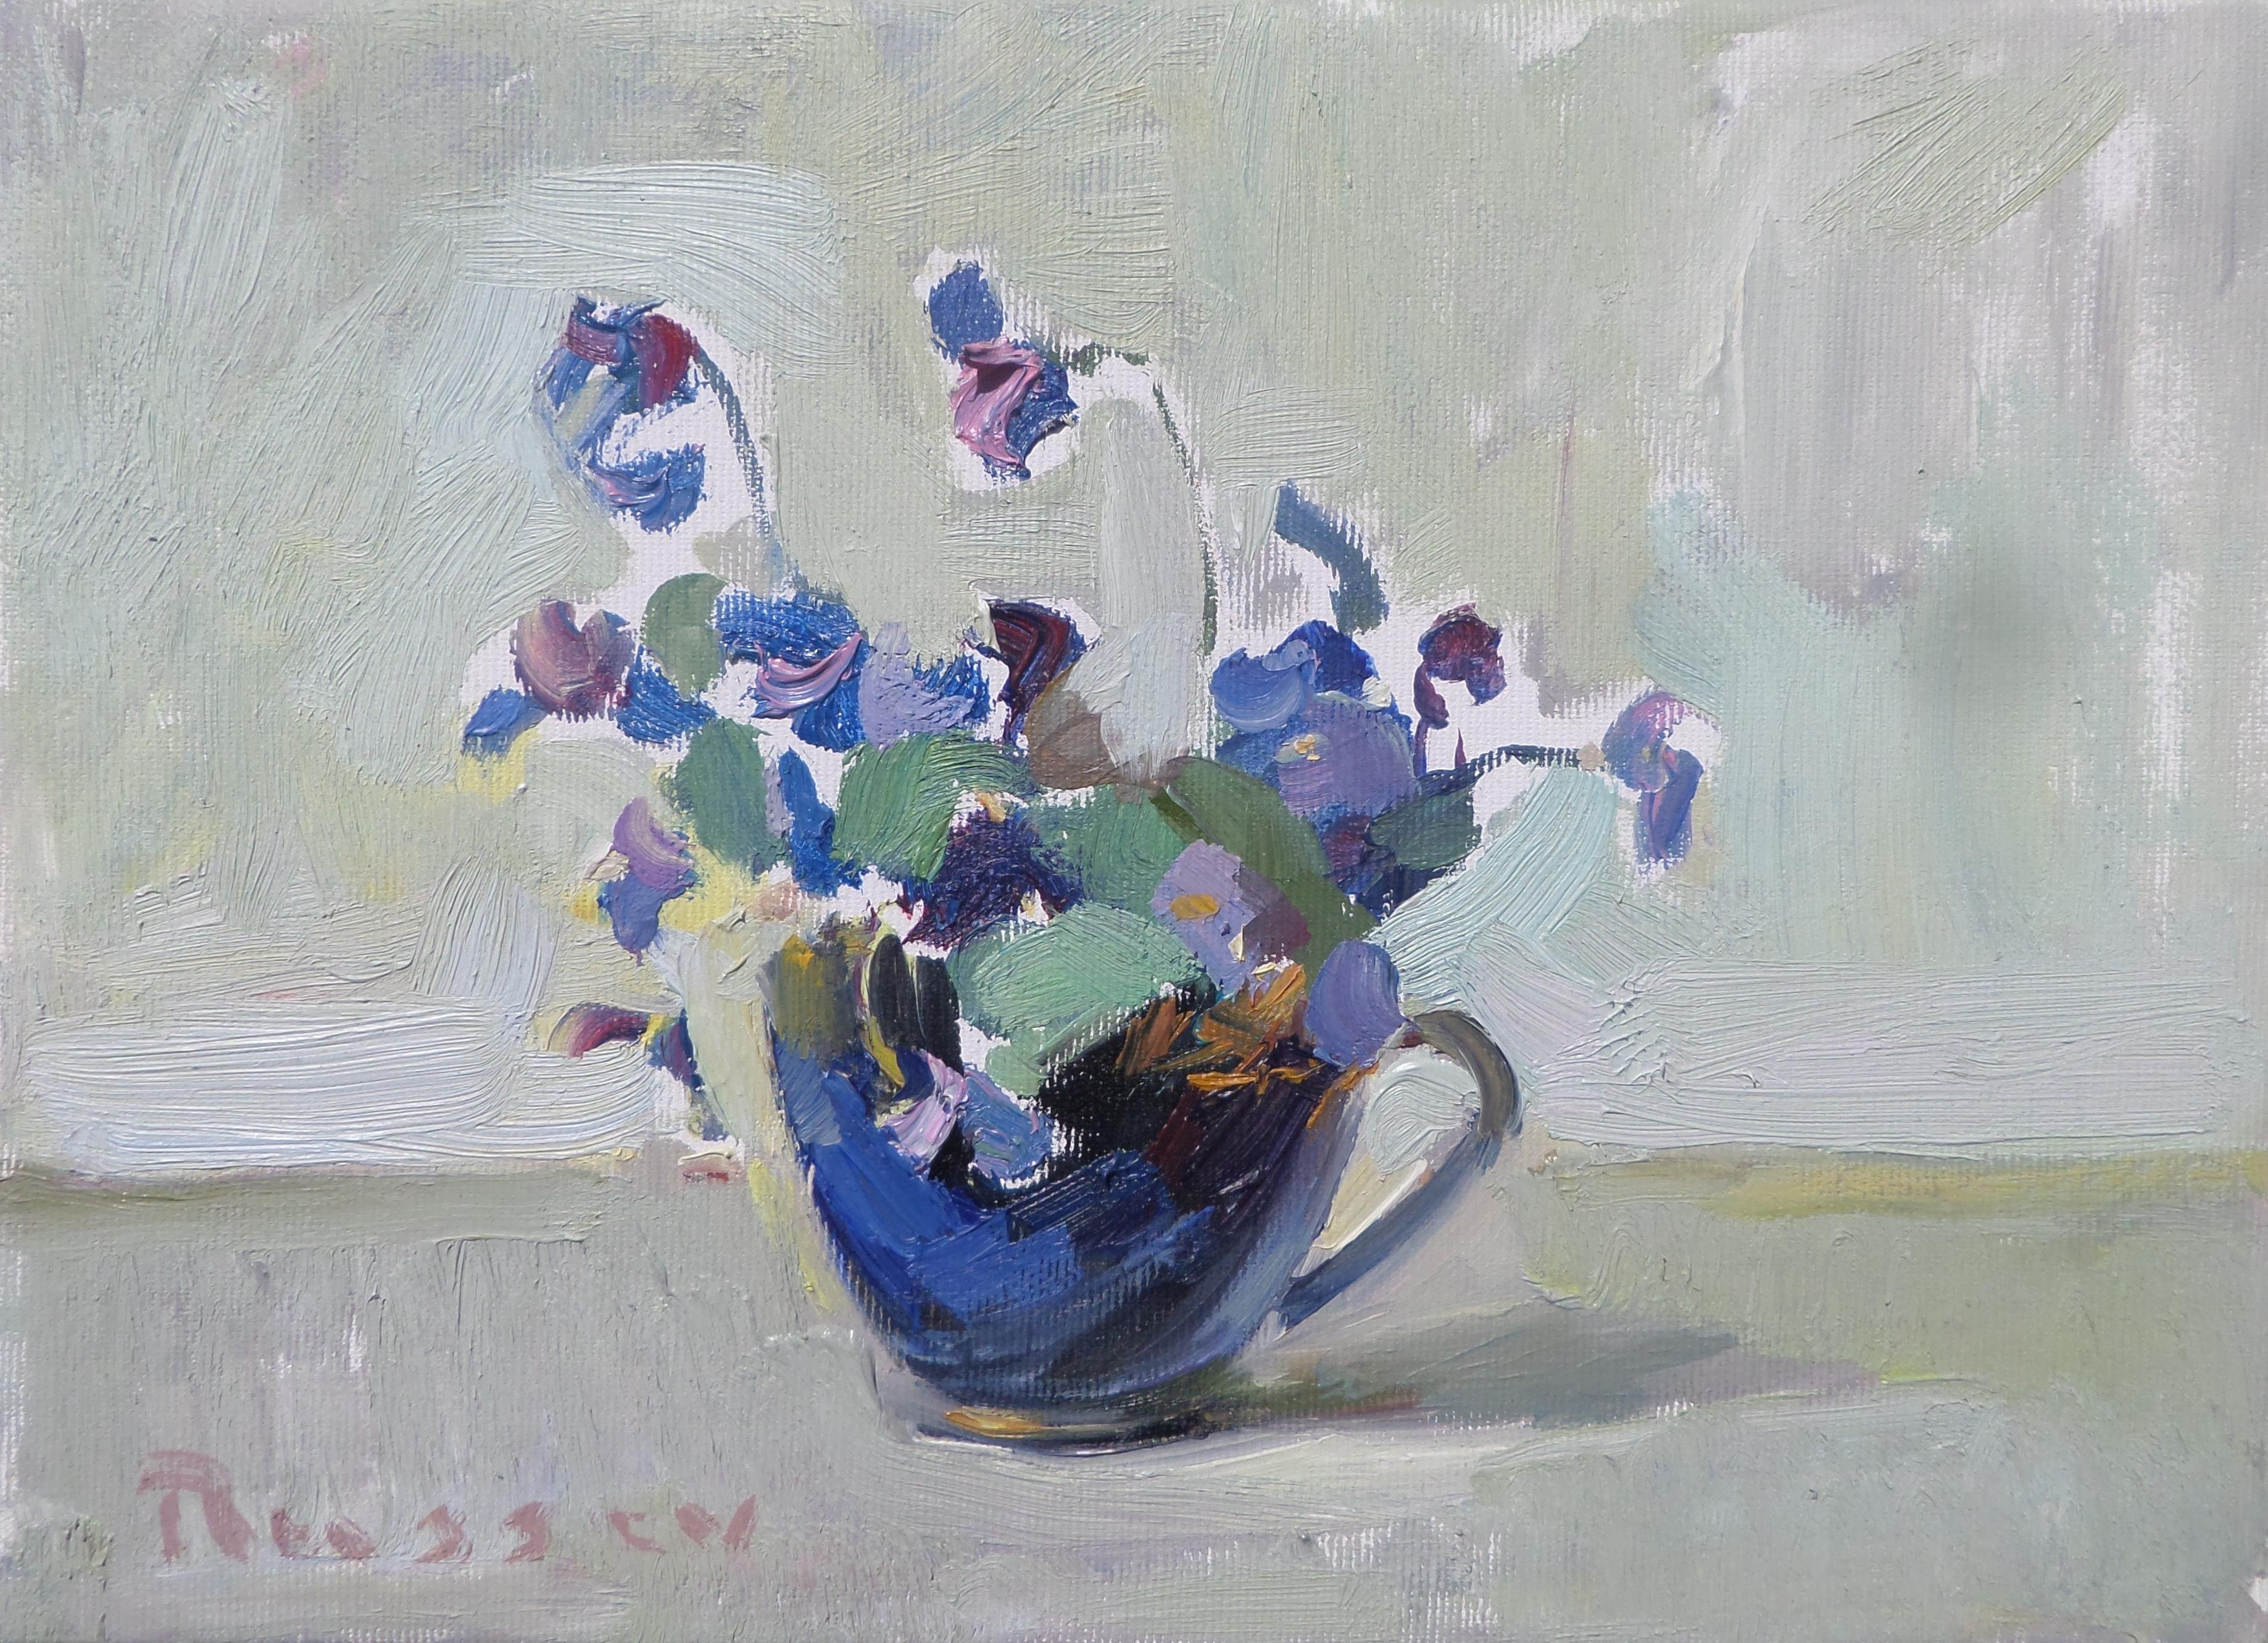 Ivan Roussev Still-Life Painting - Violets - Still Life Painting Oil Painting Colors Blue Lilac White Grey Green